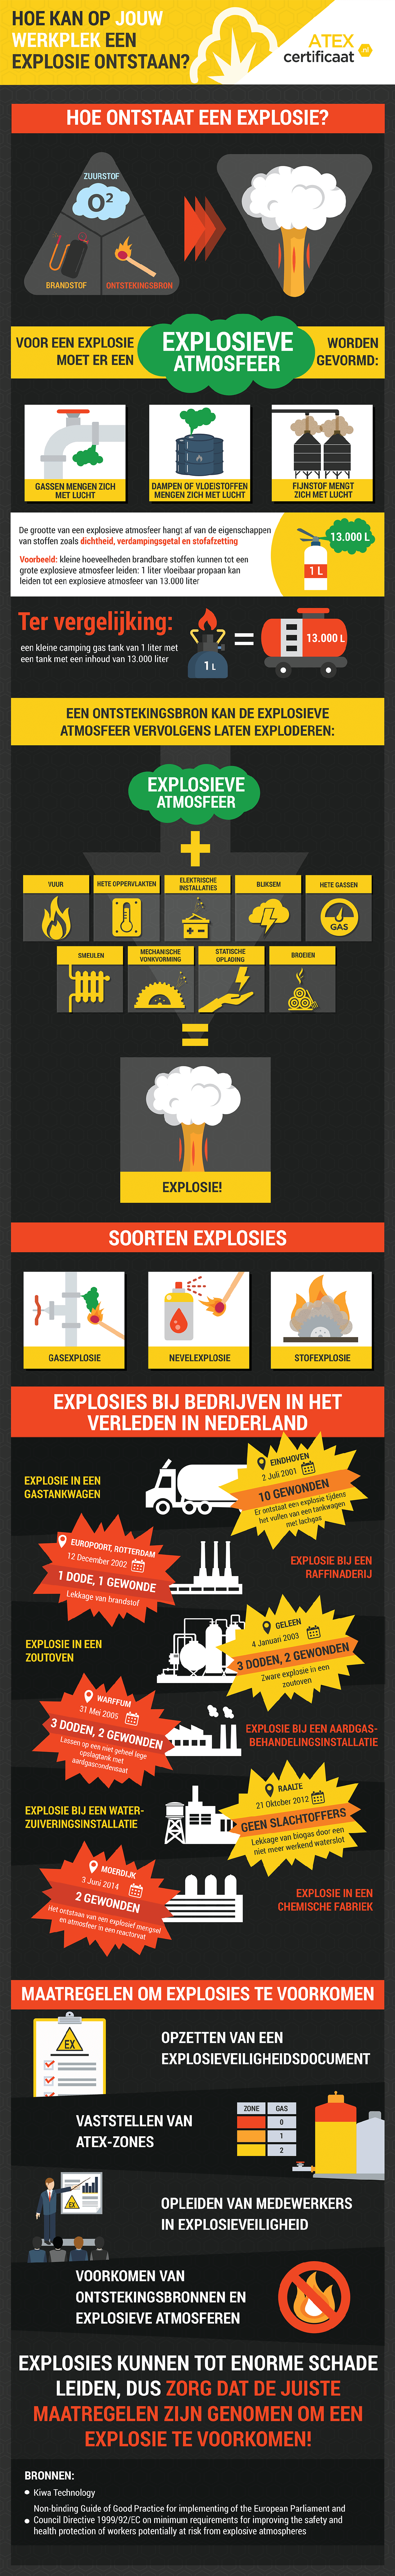 Infographic: Hoe kan op jouw werkplek een explosie ontstaan?